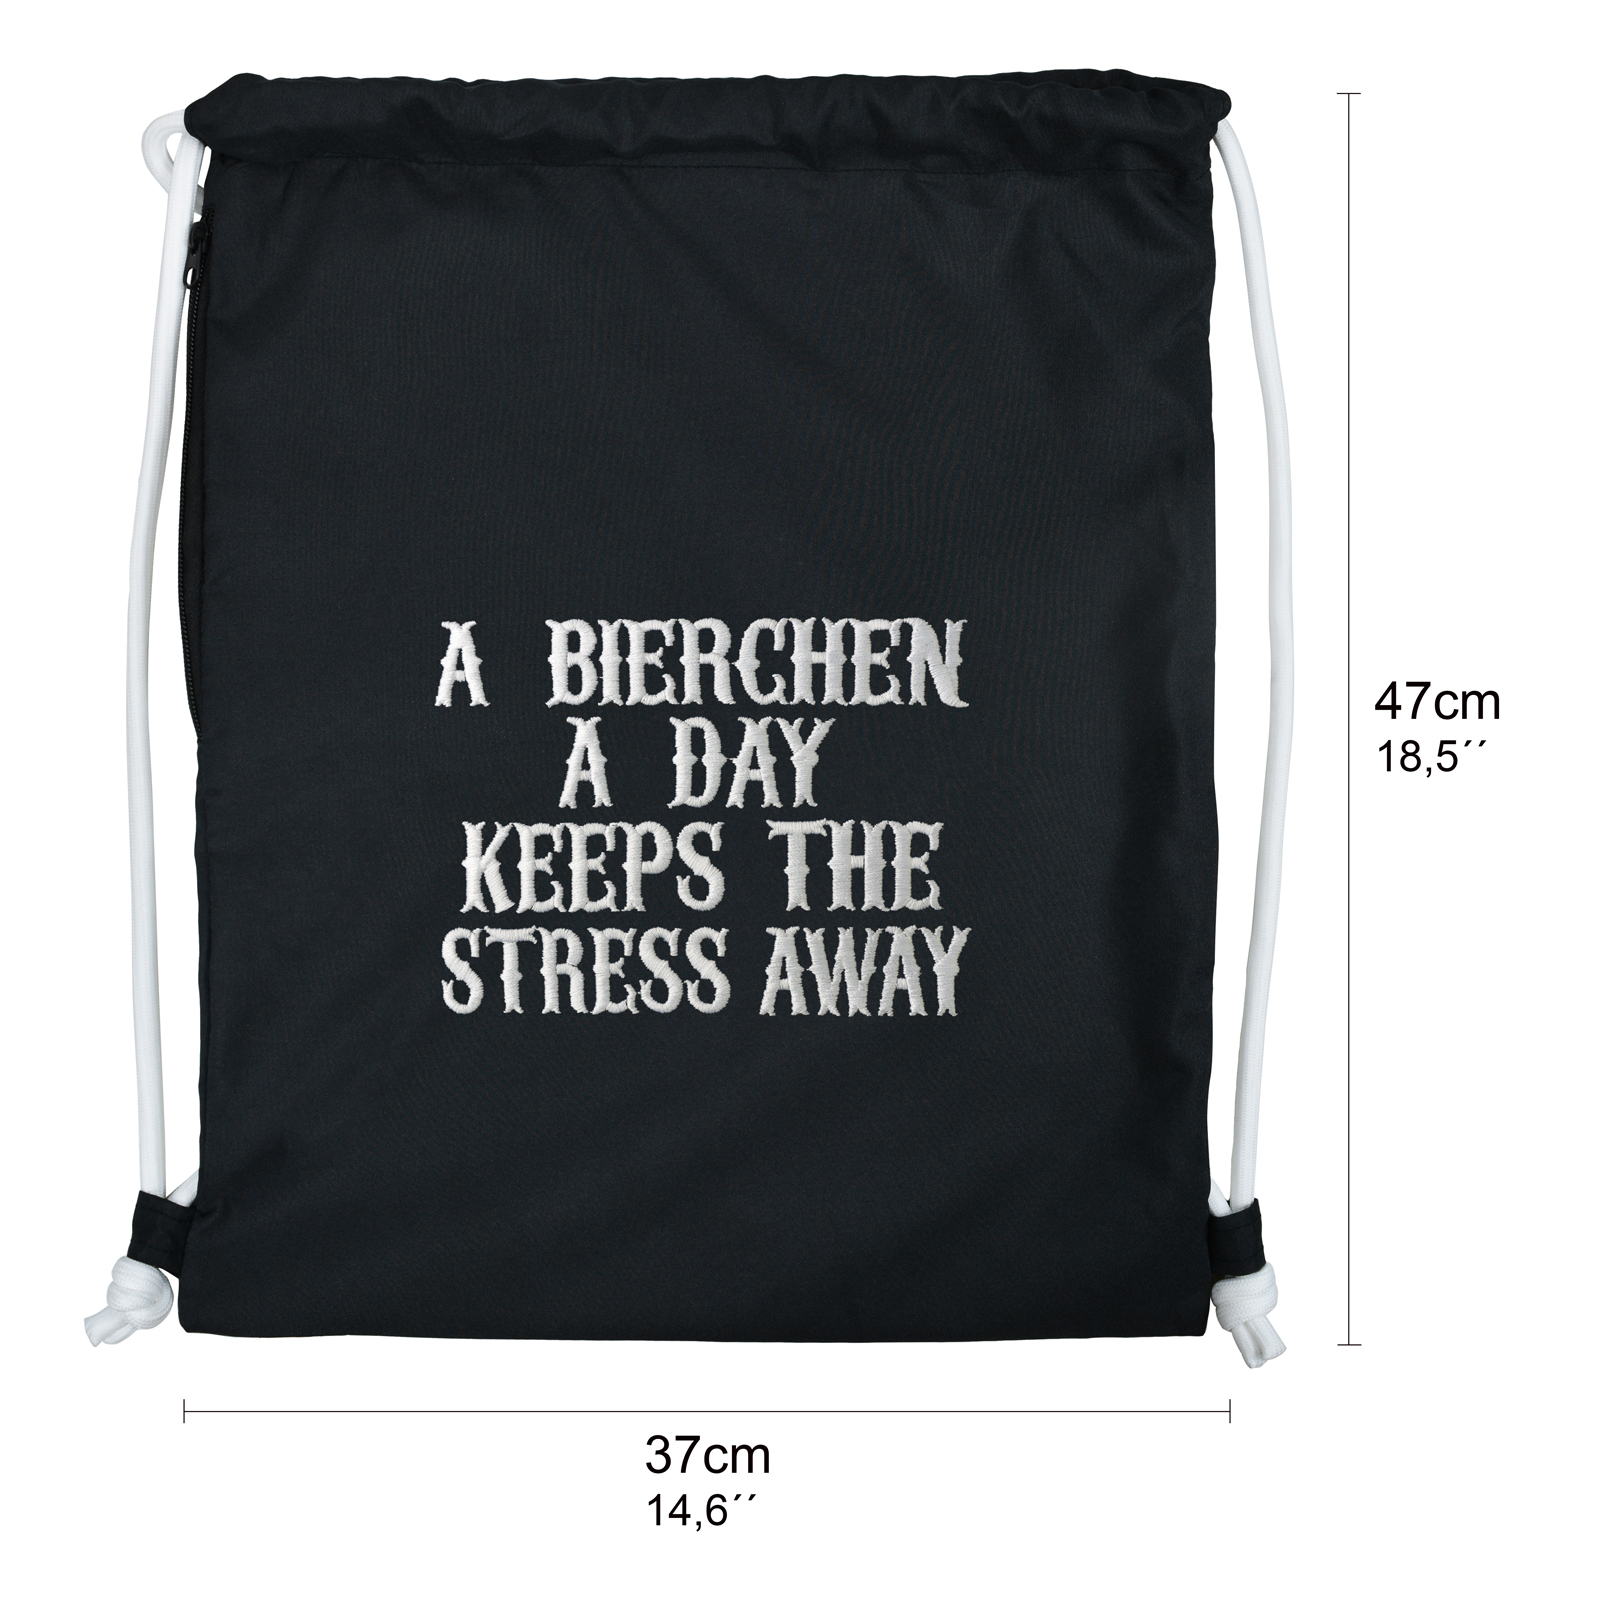 A Bierchen a day keeps the stress away - Turnbeutel